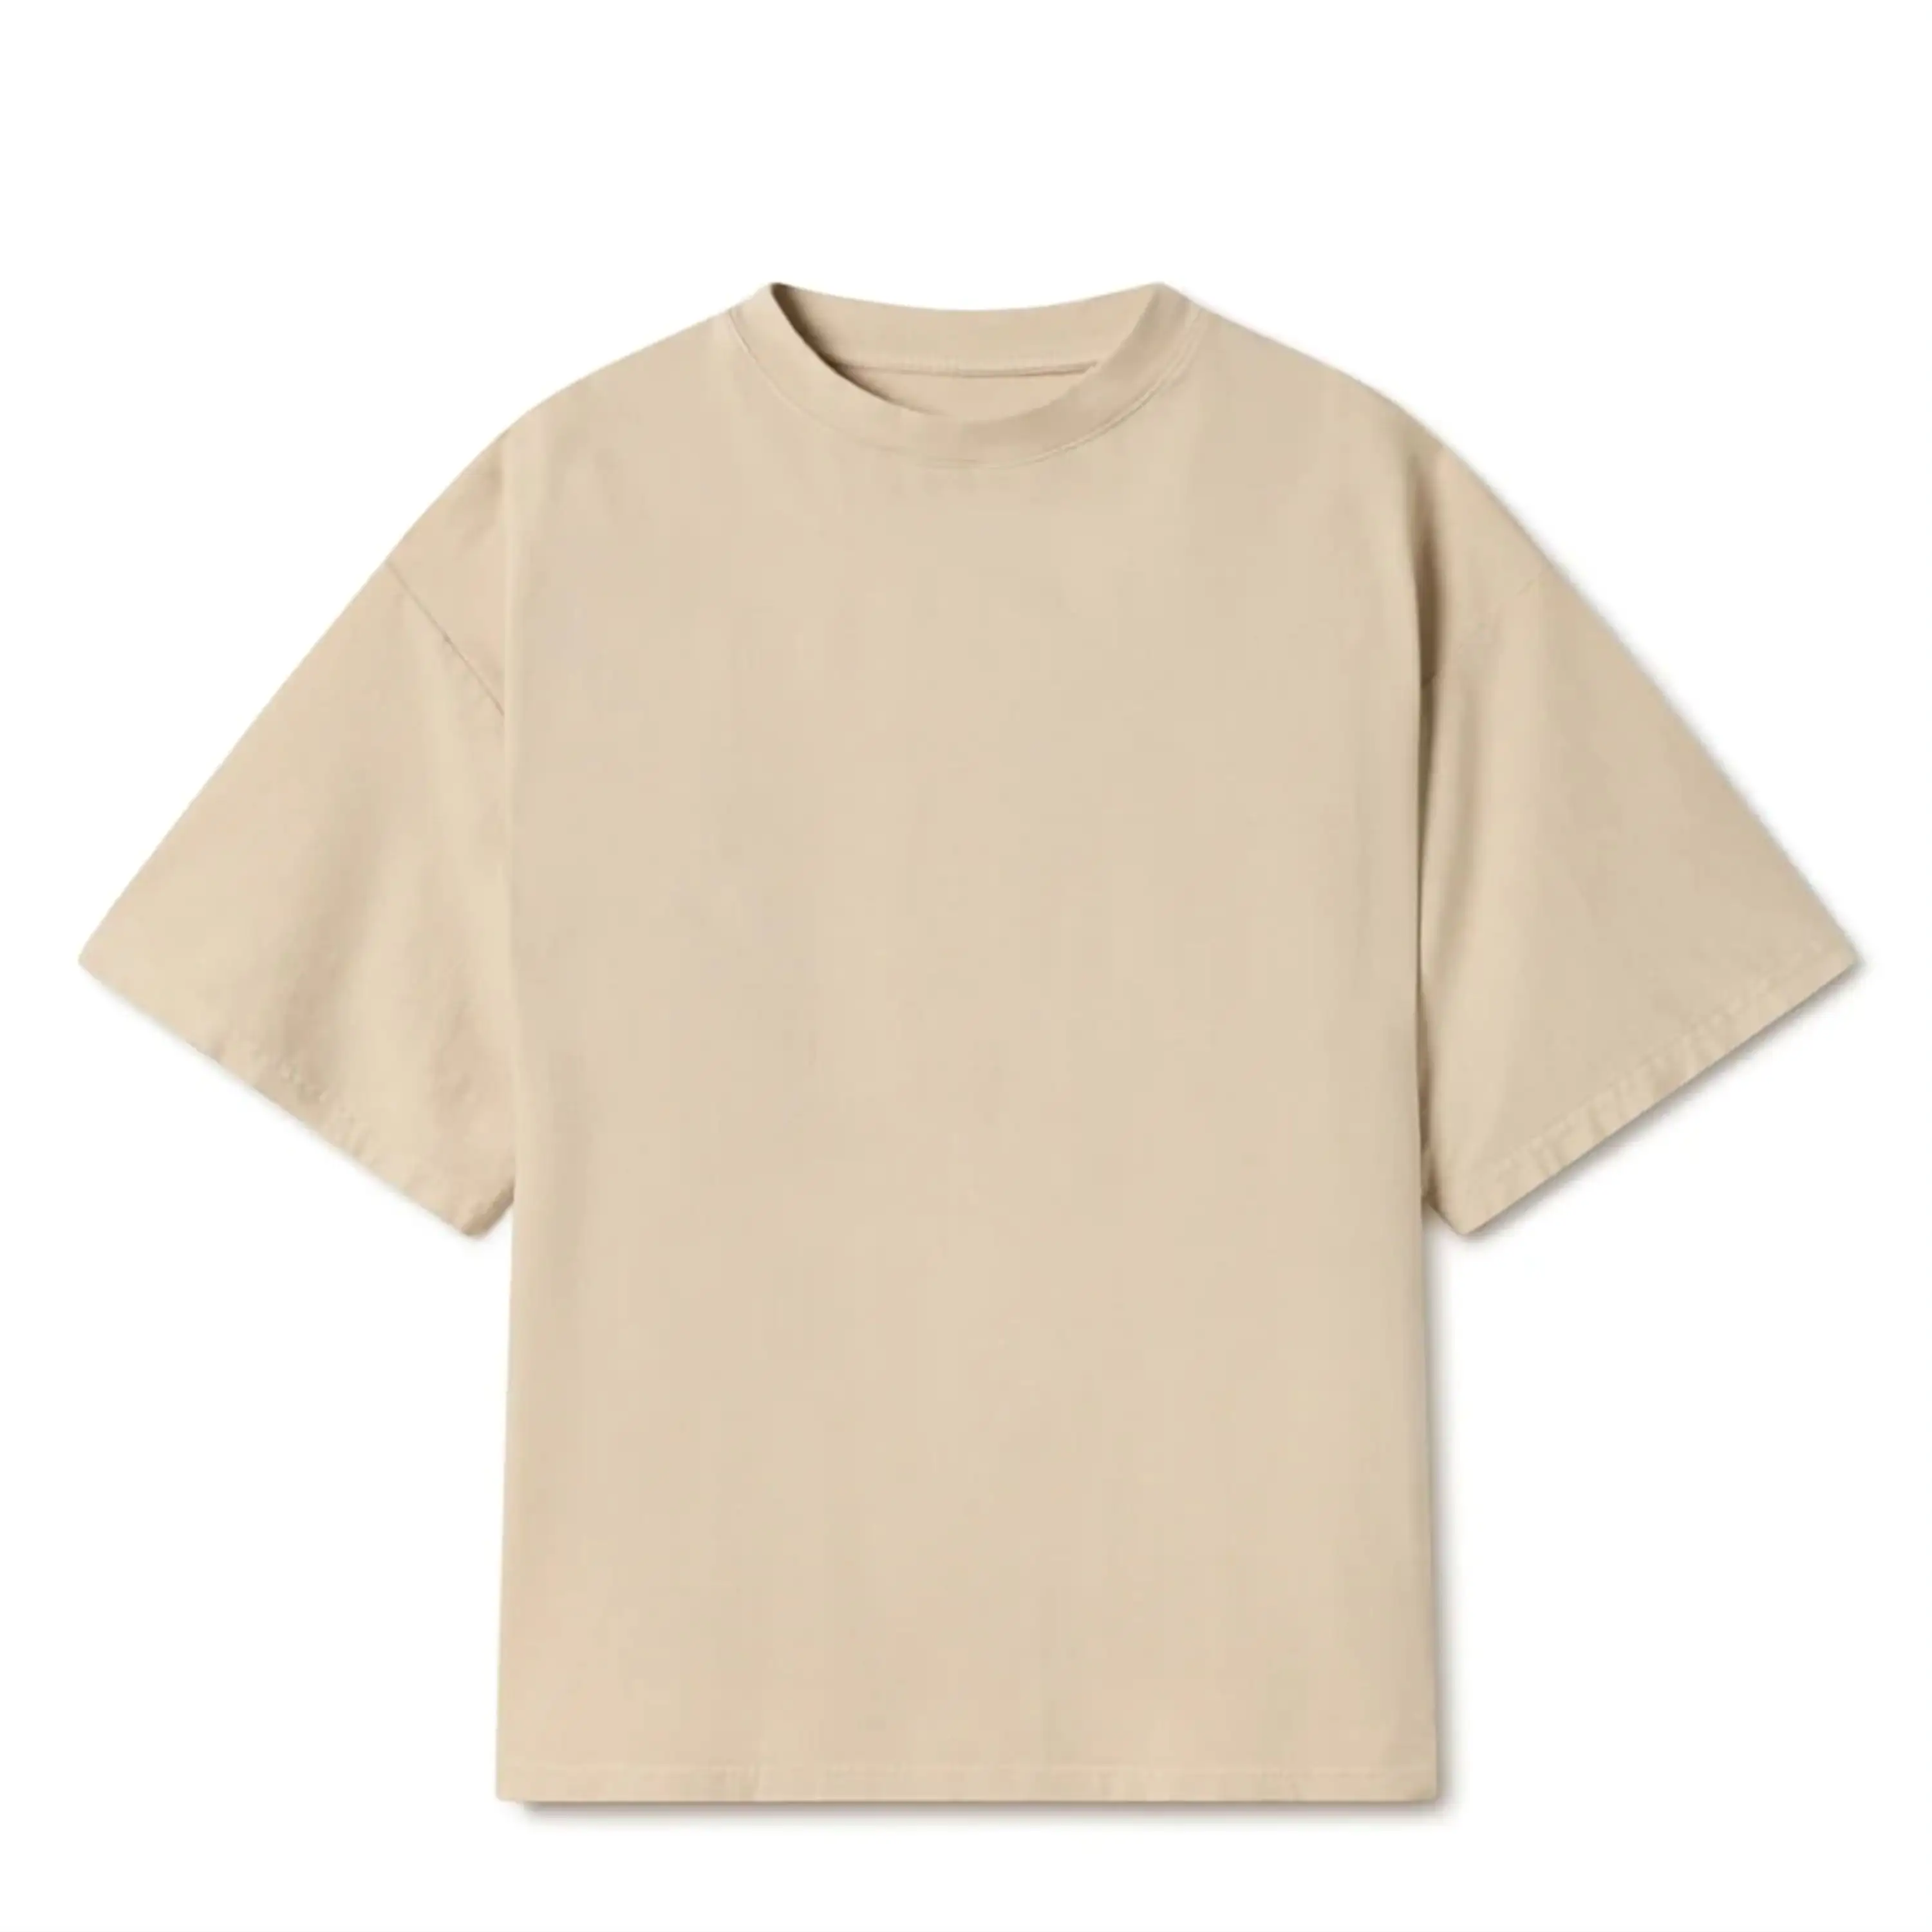 Custom Logo Tshirts Tee Shirt 100% Cotton Men Tshirt 180 GSM Thick Cotton breathable unisex Blank T Shirts